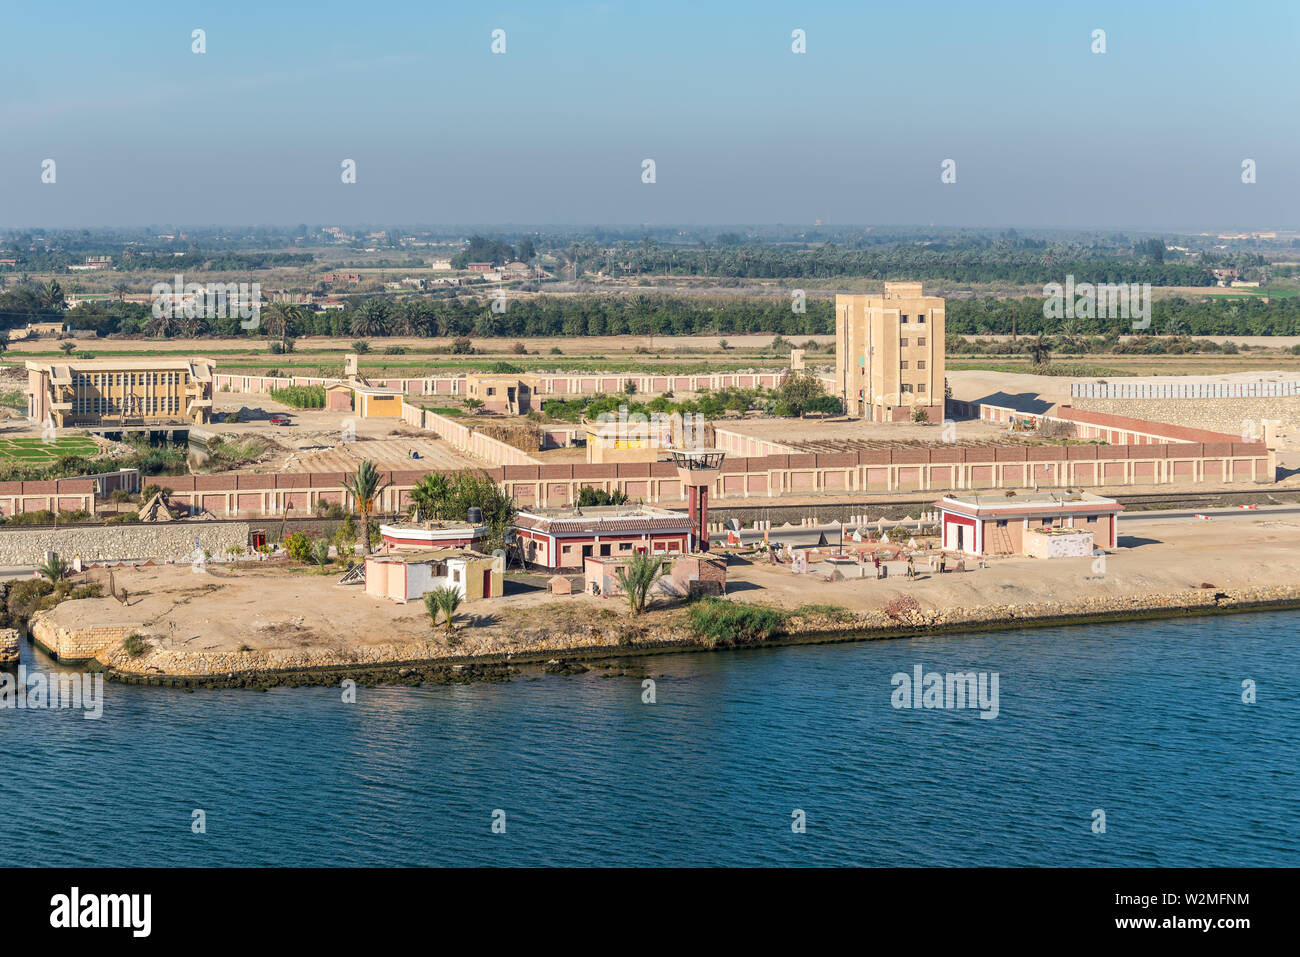 El Qantara, Ägypten - November 5, 2017: Gebäude und Felder am Ufer des Suez Kanal in der Nähe von El Qantara, Ägypten. Typische Landschaft. Stockfoto